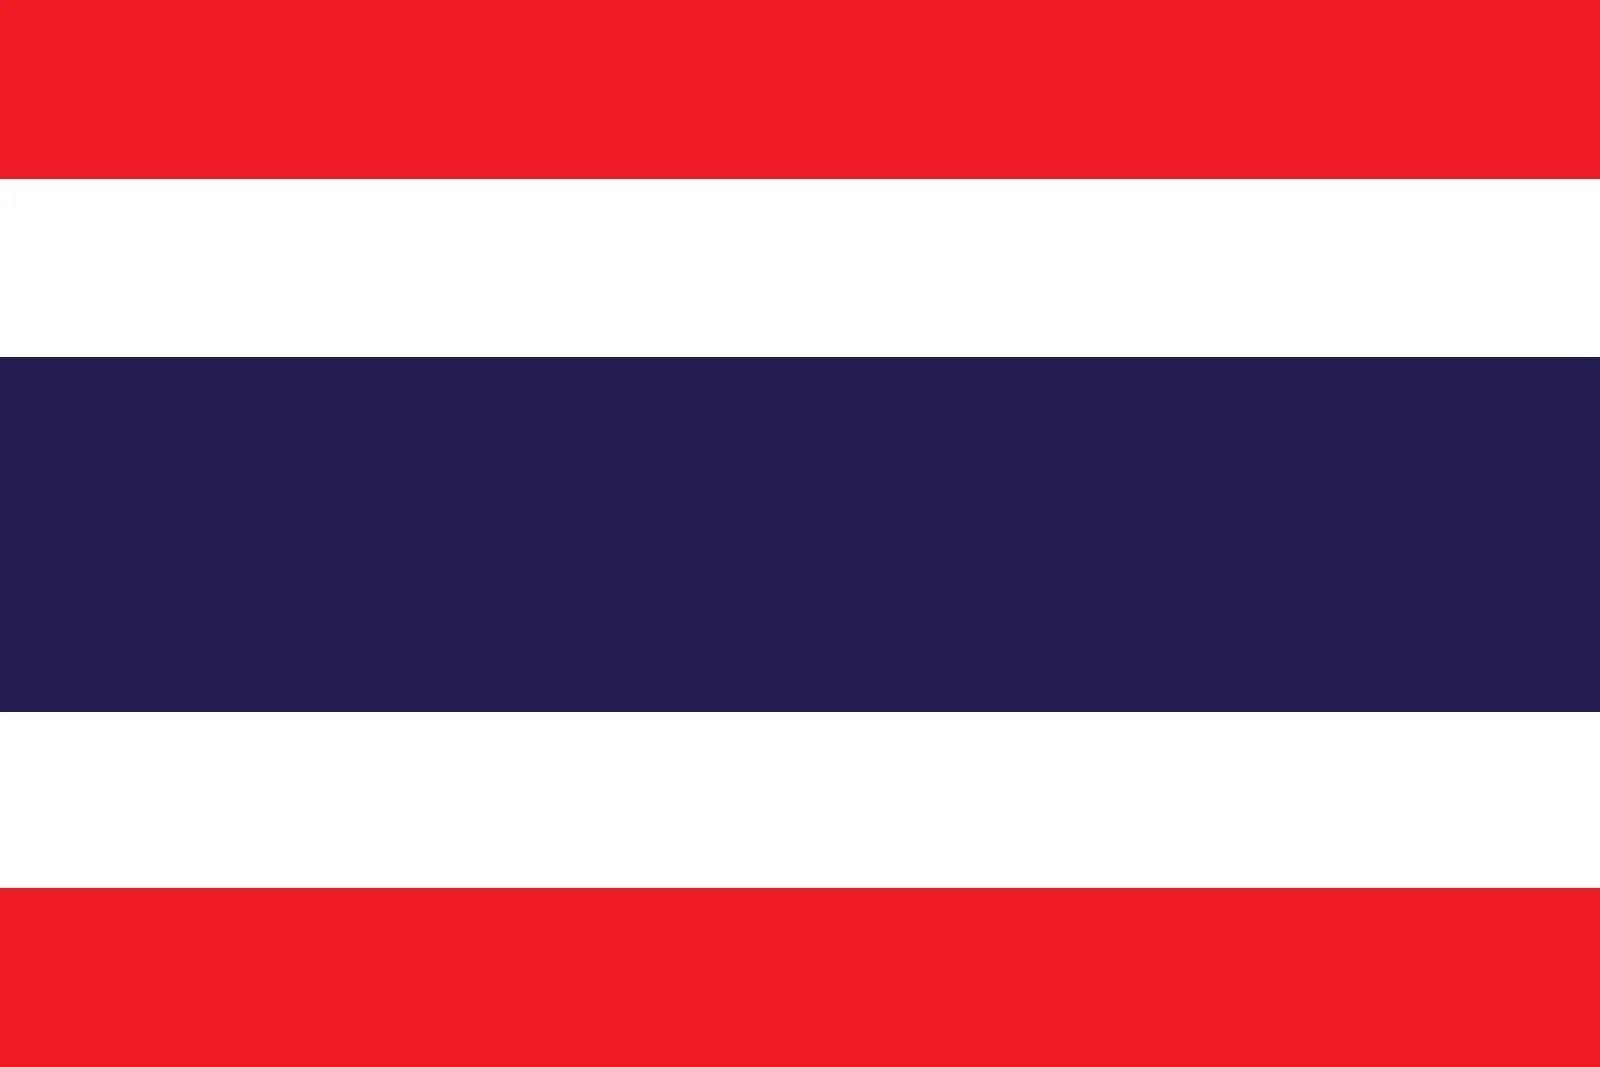 Thailand_carbon_tax_2025_8812_0.jpg